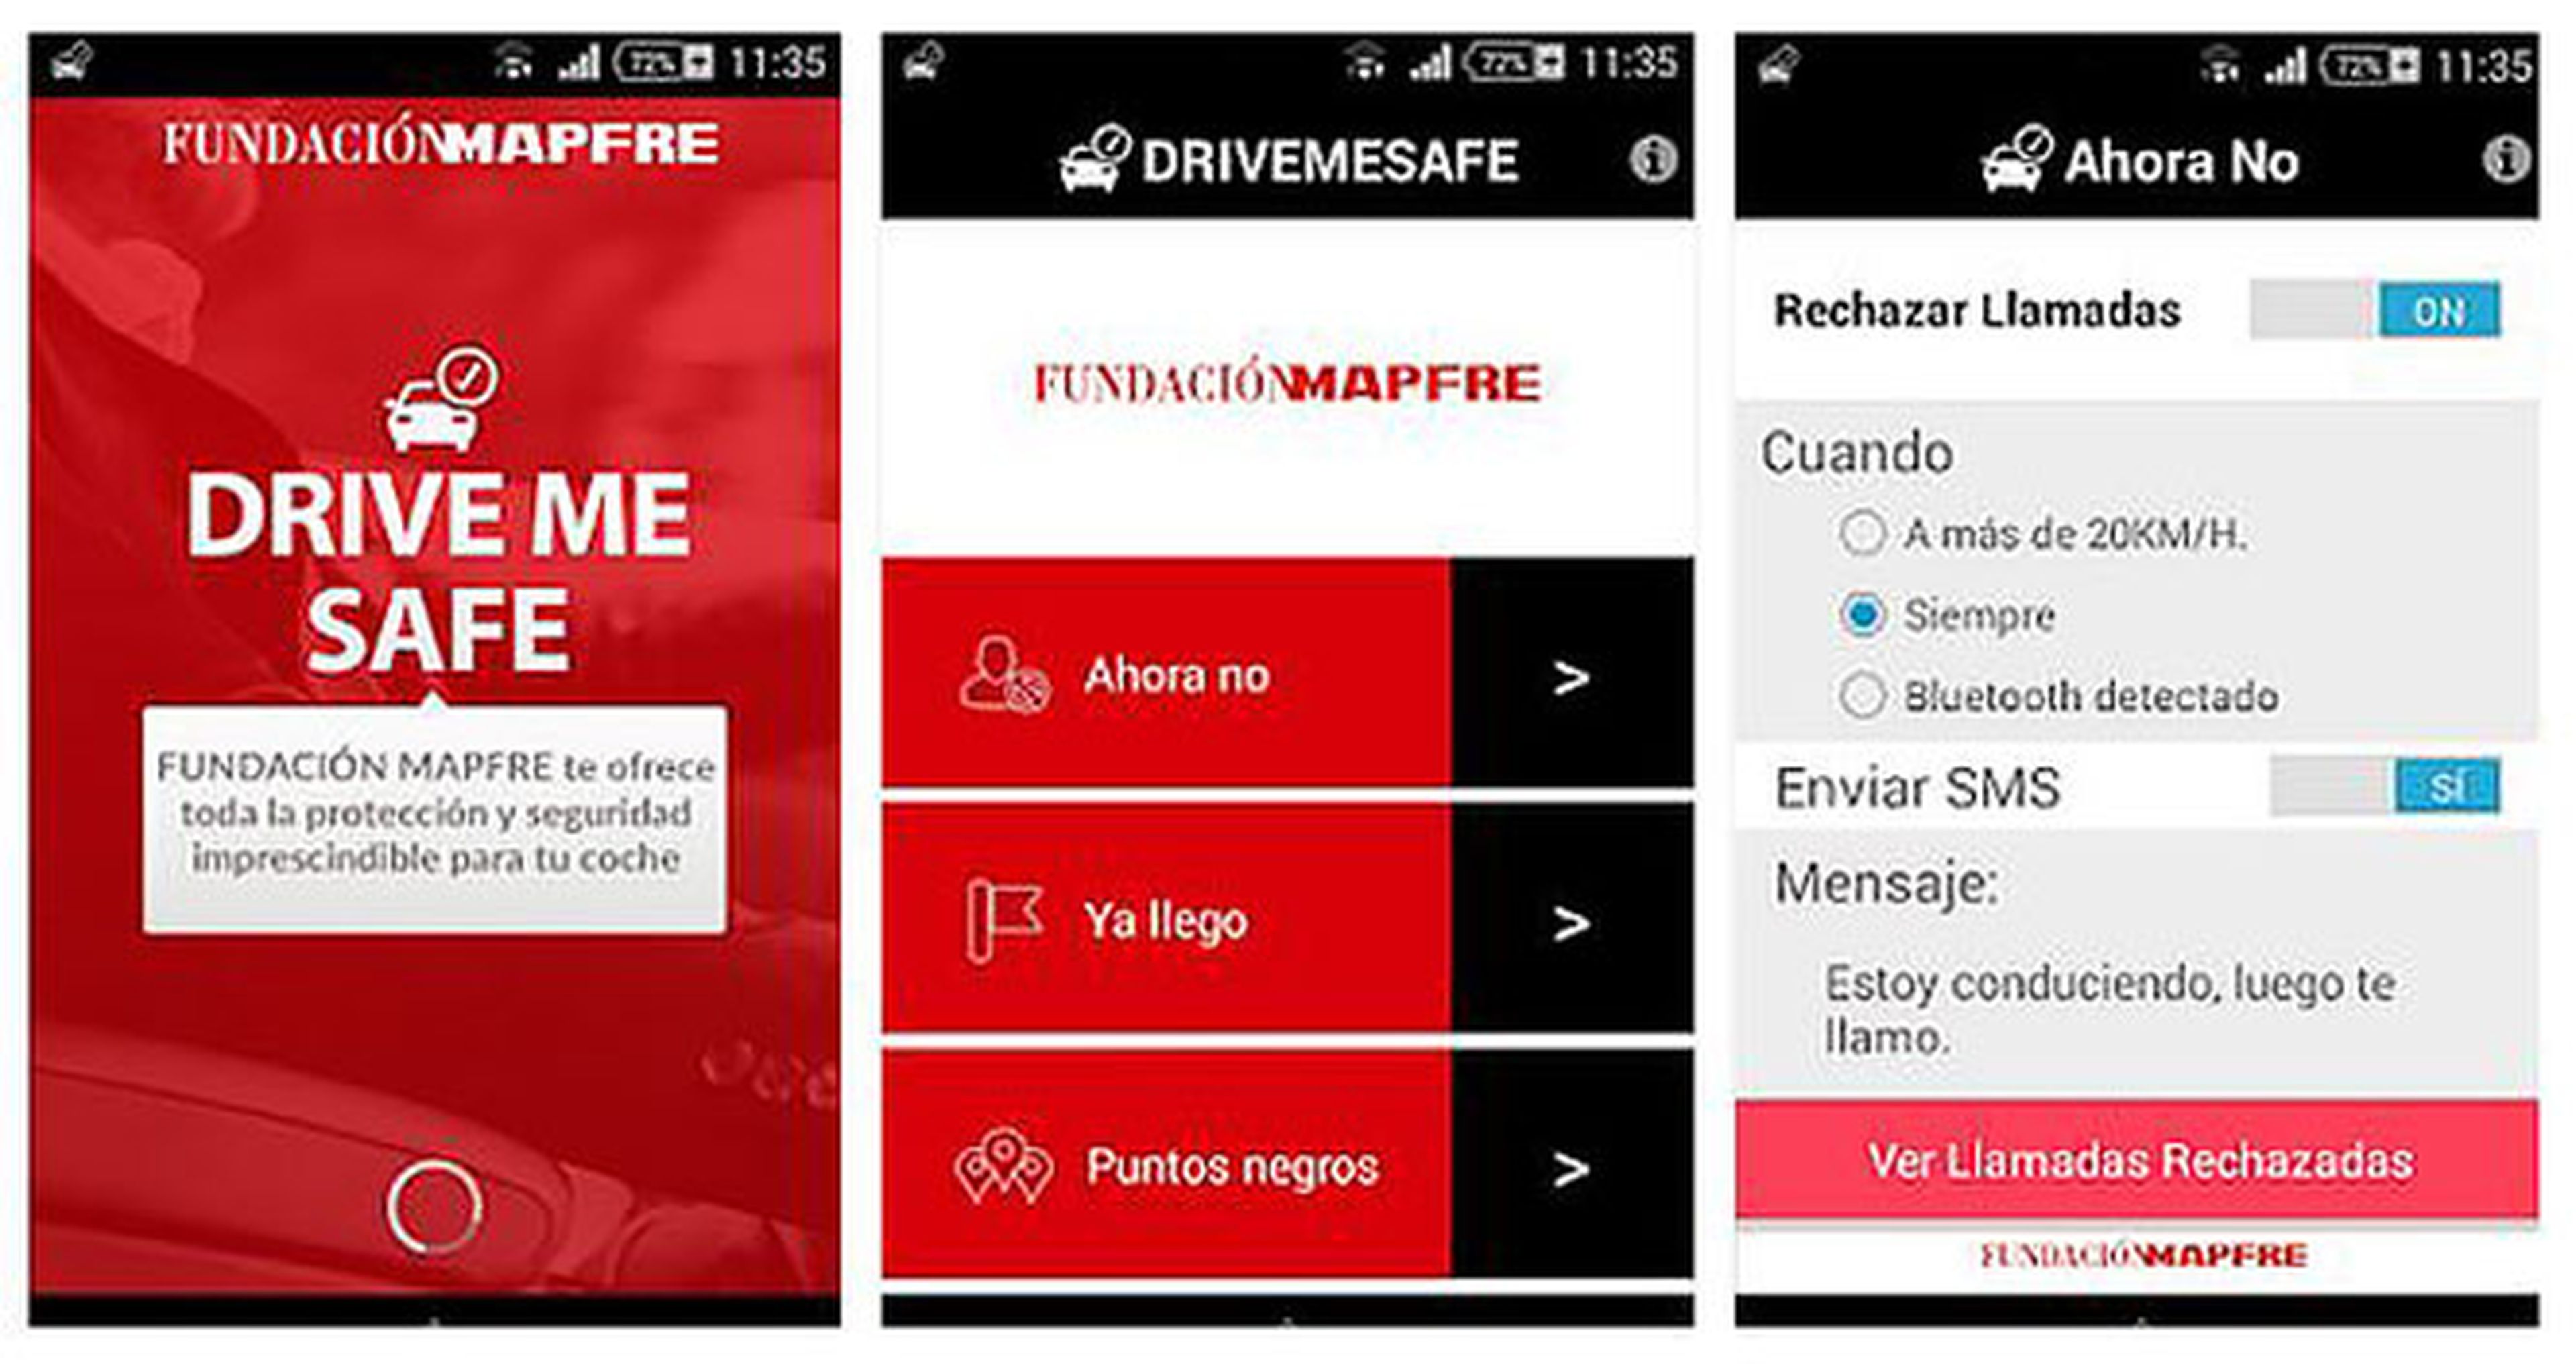 ‘Drivemesafe’, la app de Mapfre para conducir seguro